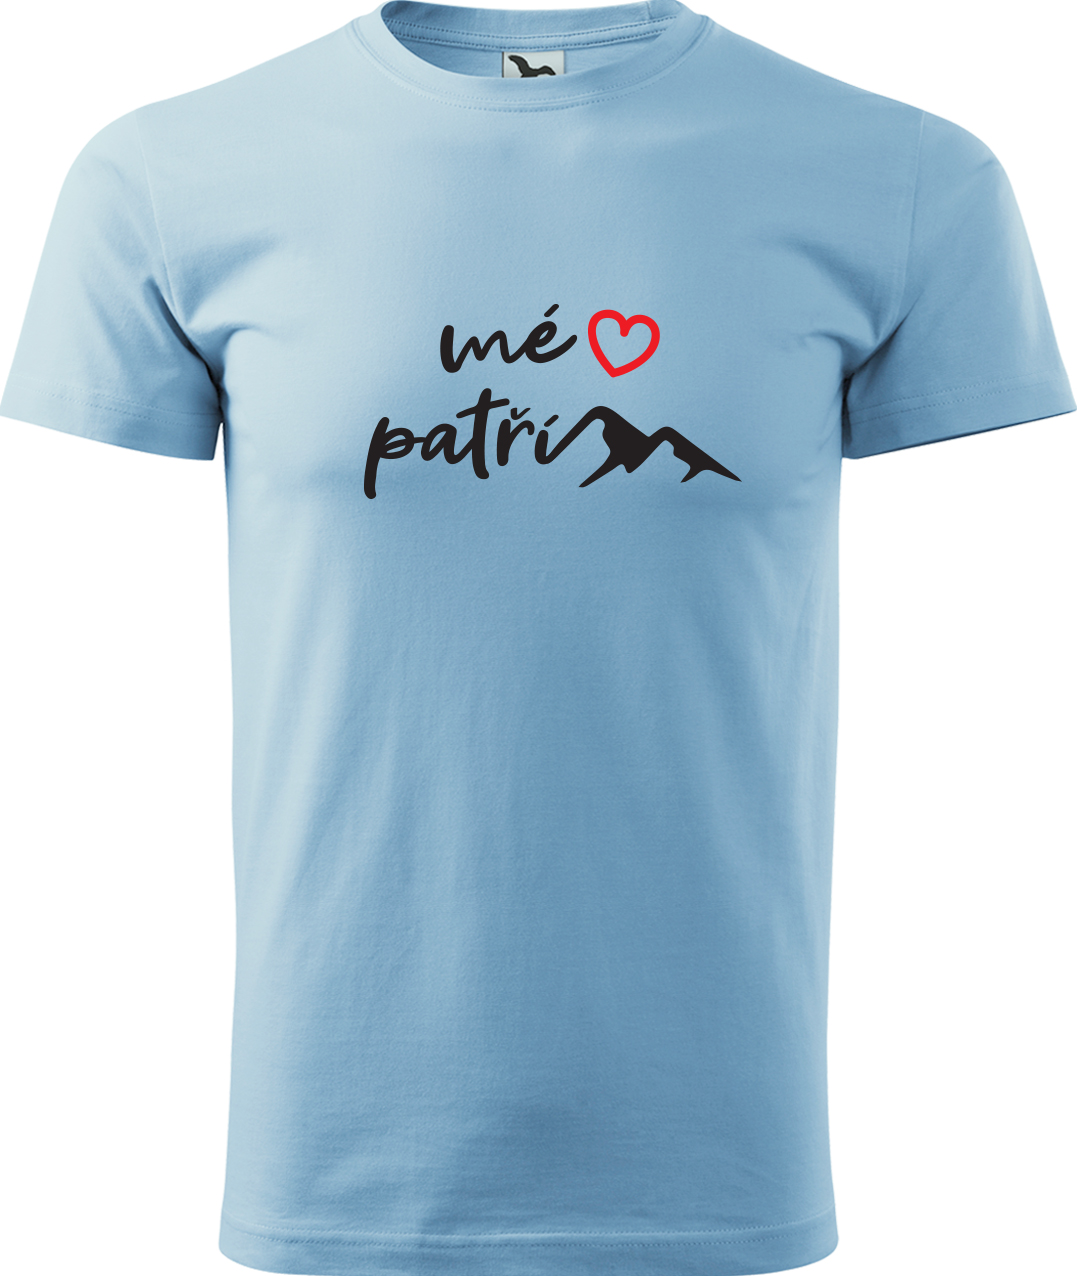 Pánské tričko na hory - Mé srdce patří horám Velikost: S, Barva: Nebesky modrá (15), Střih: pánský